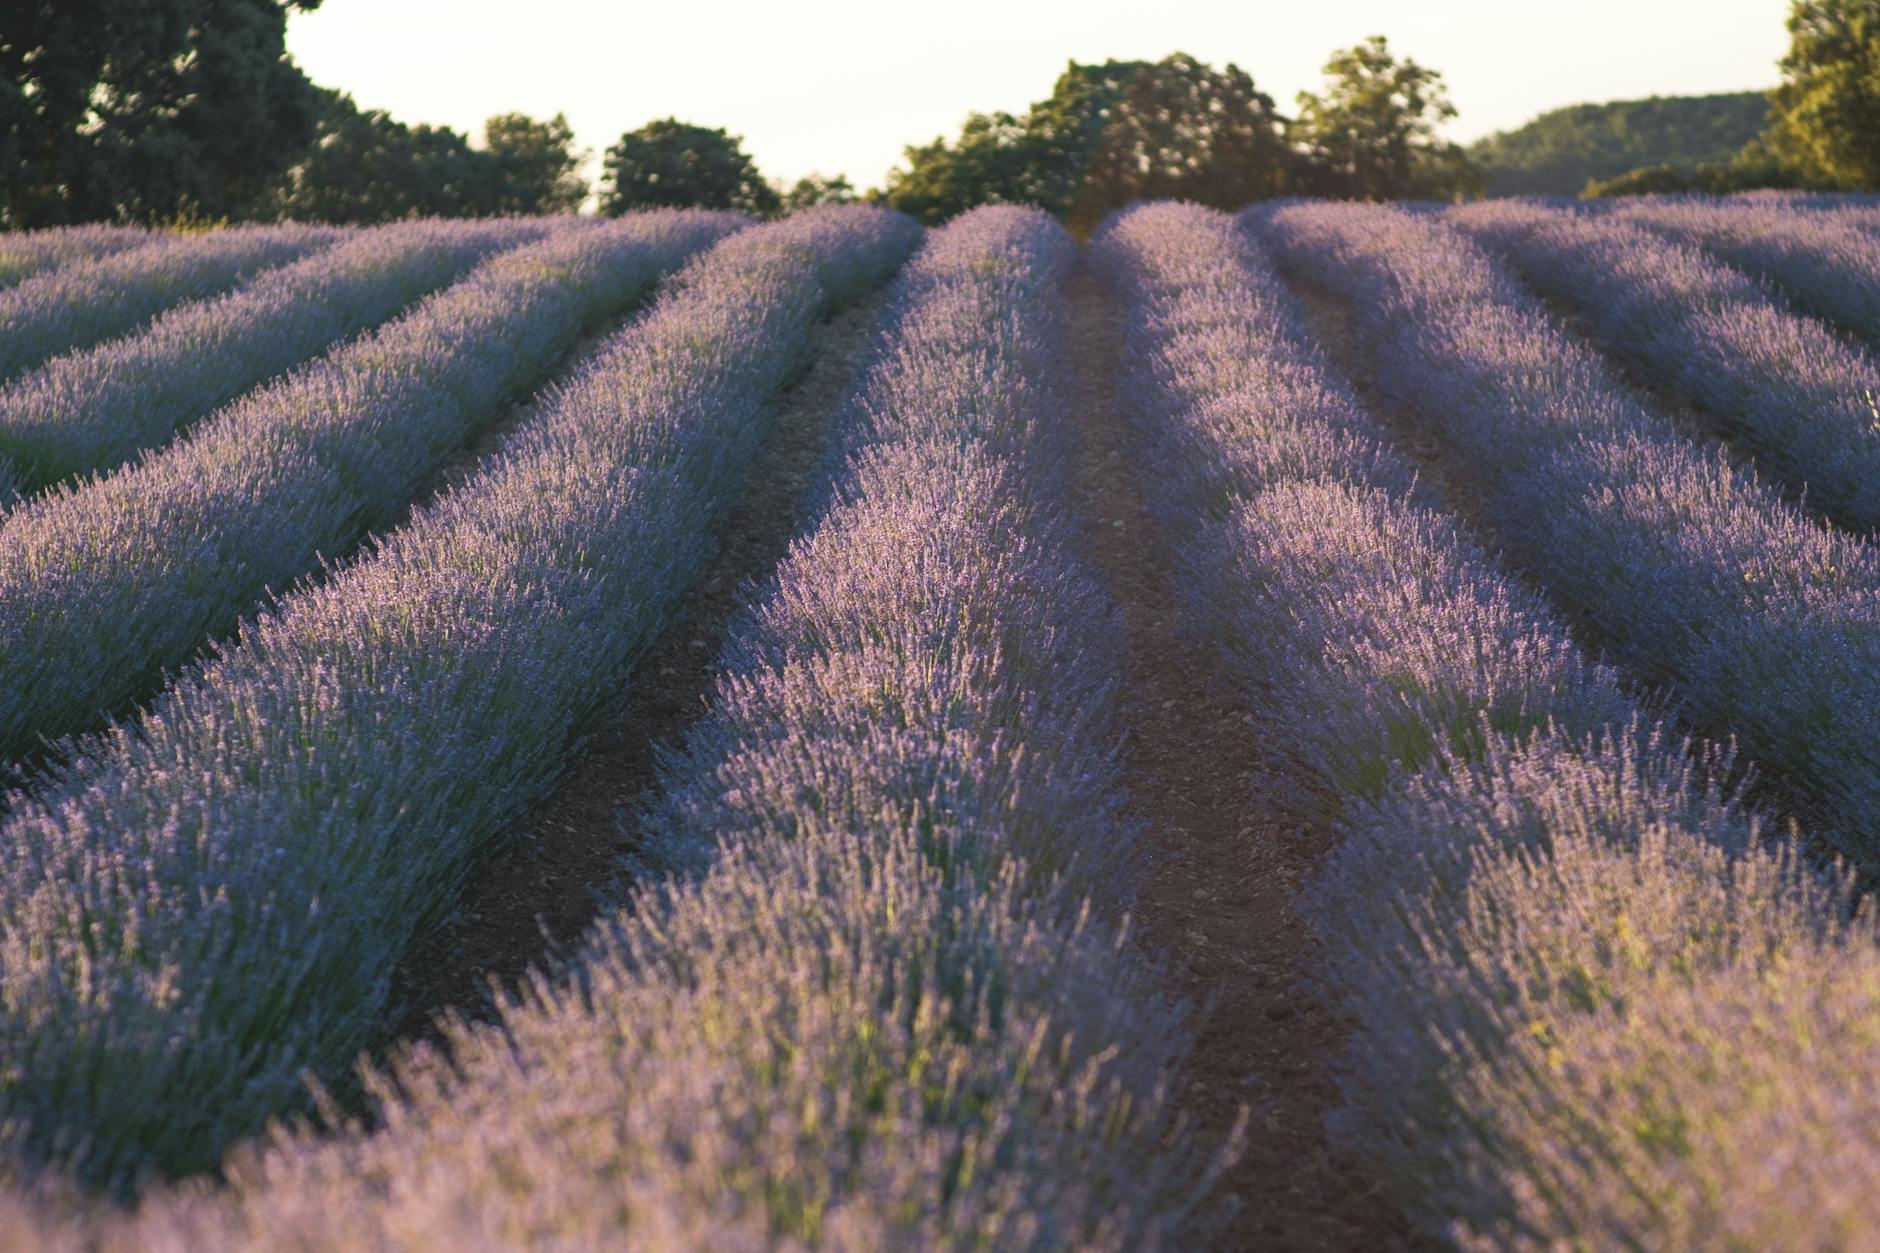 Lavender Flower Field